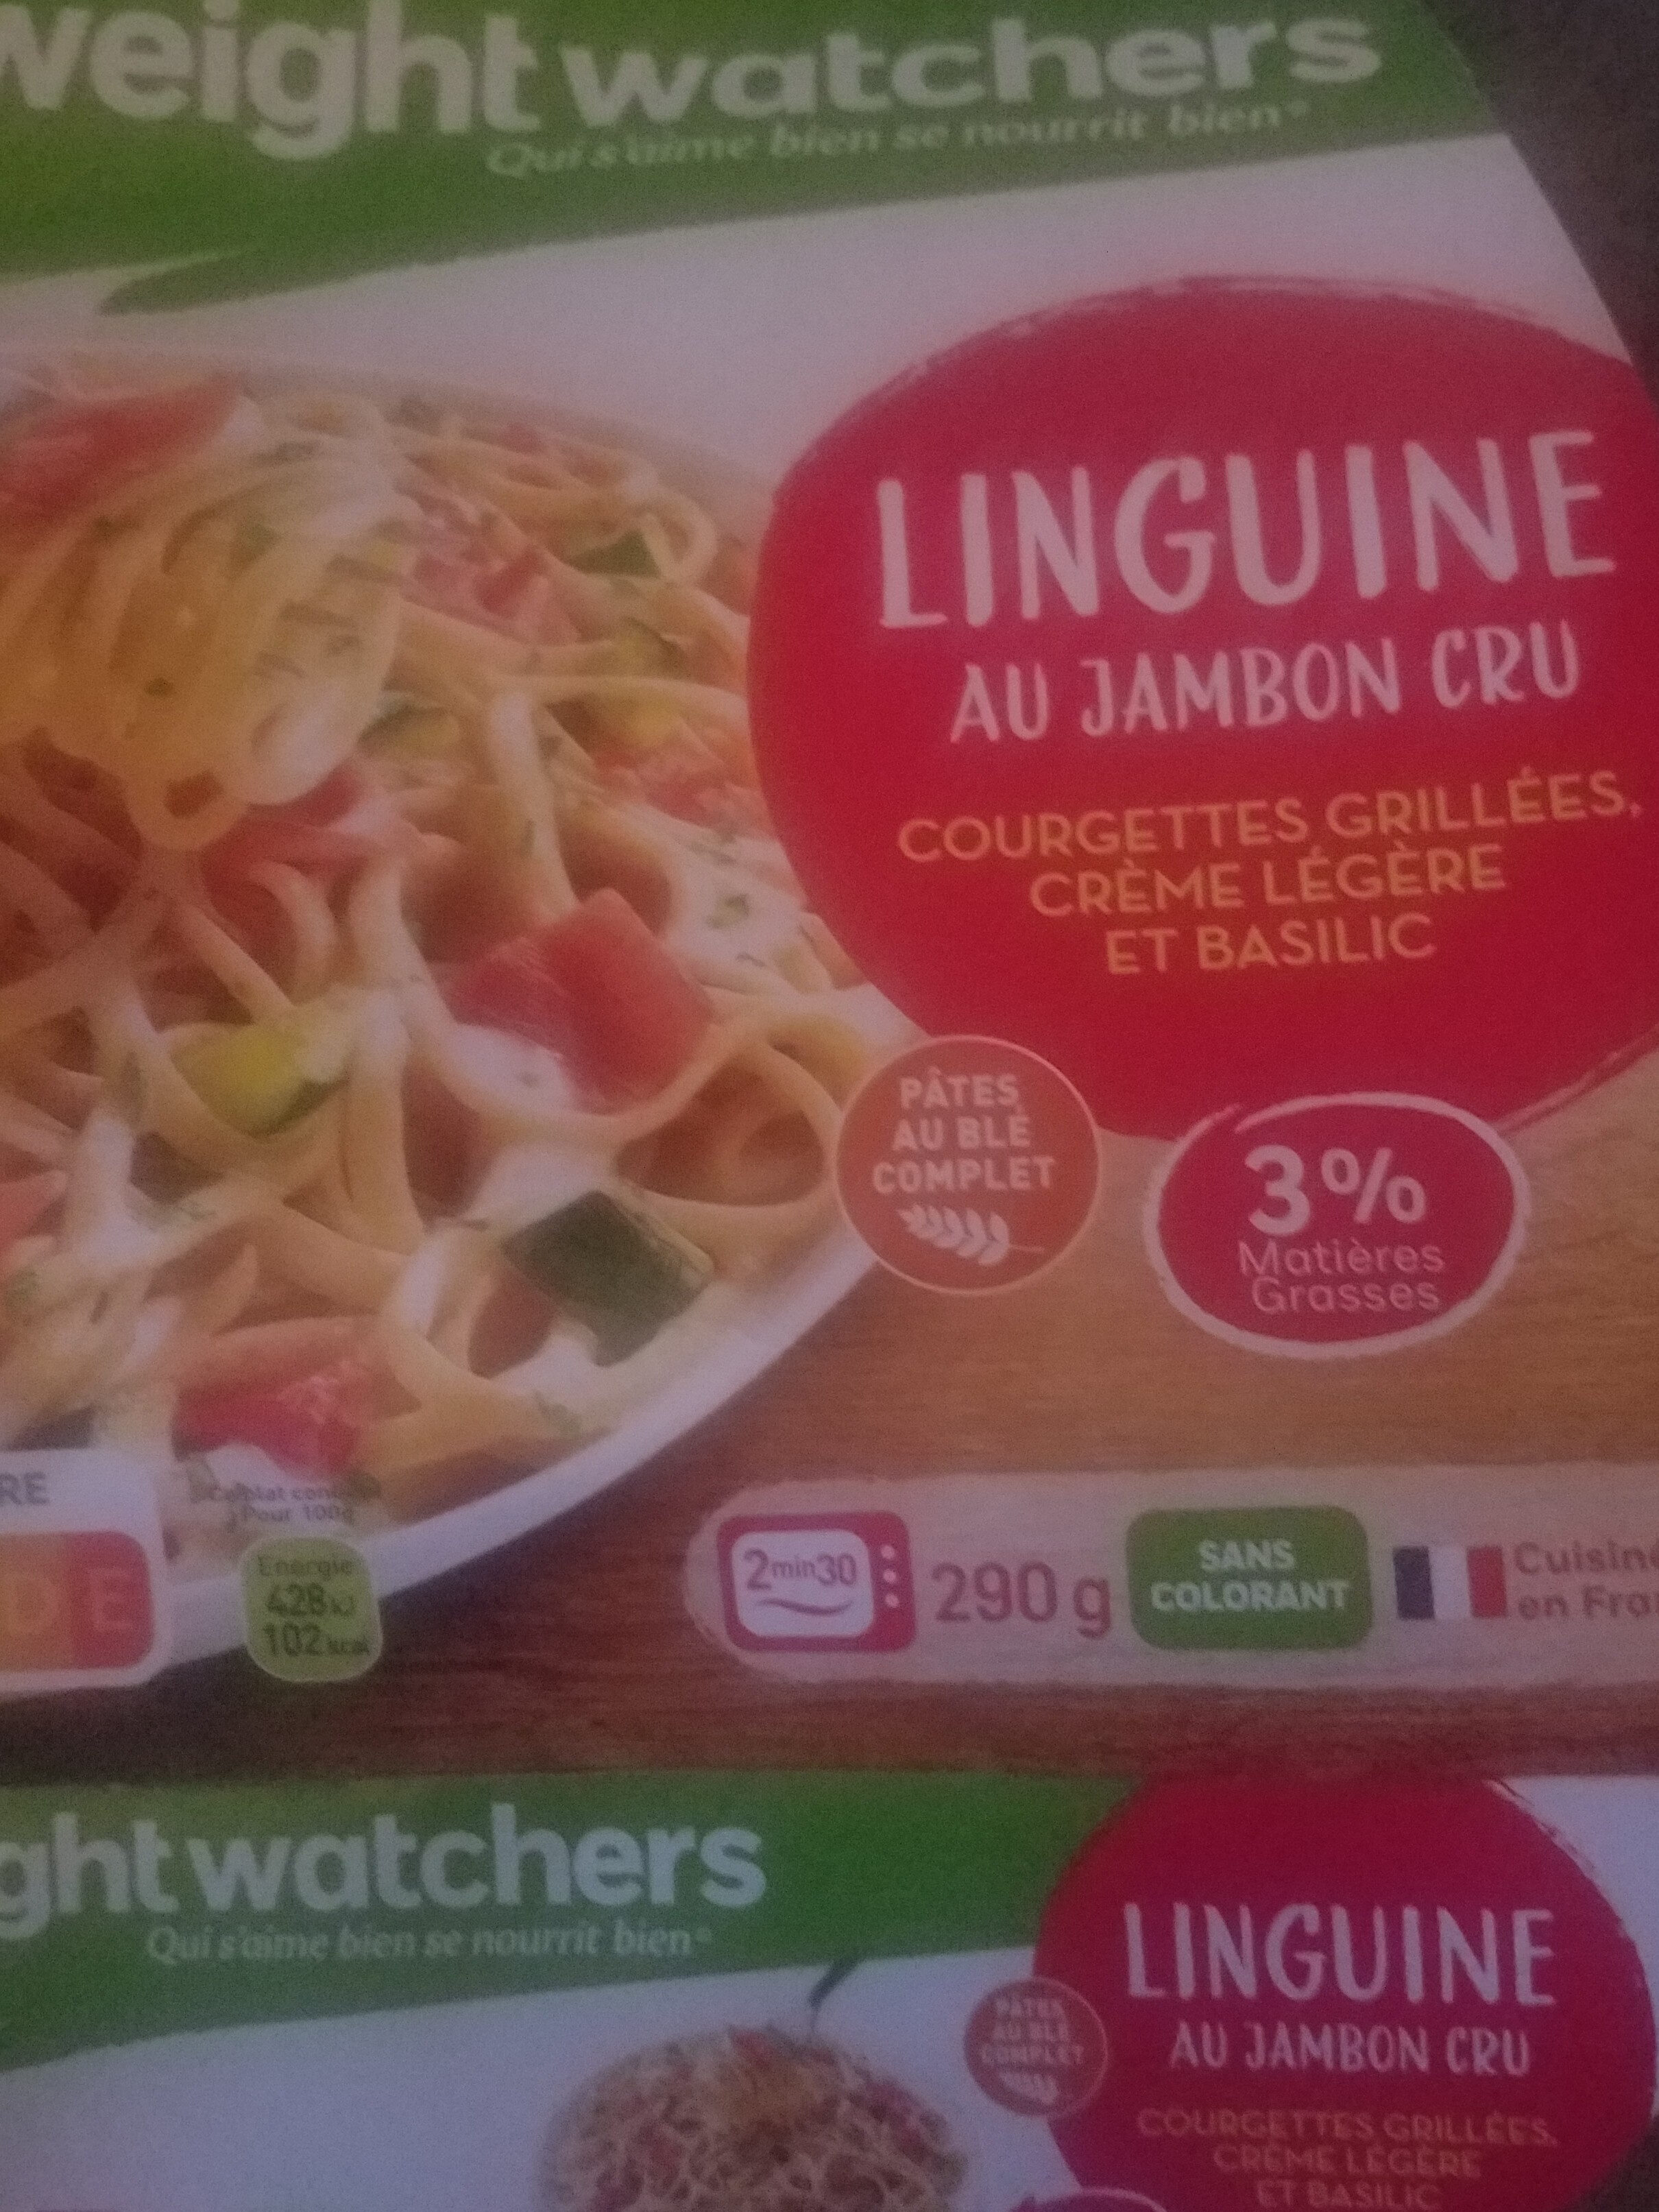 linguine au jambon cru - Produit - fr